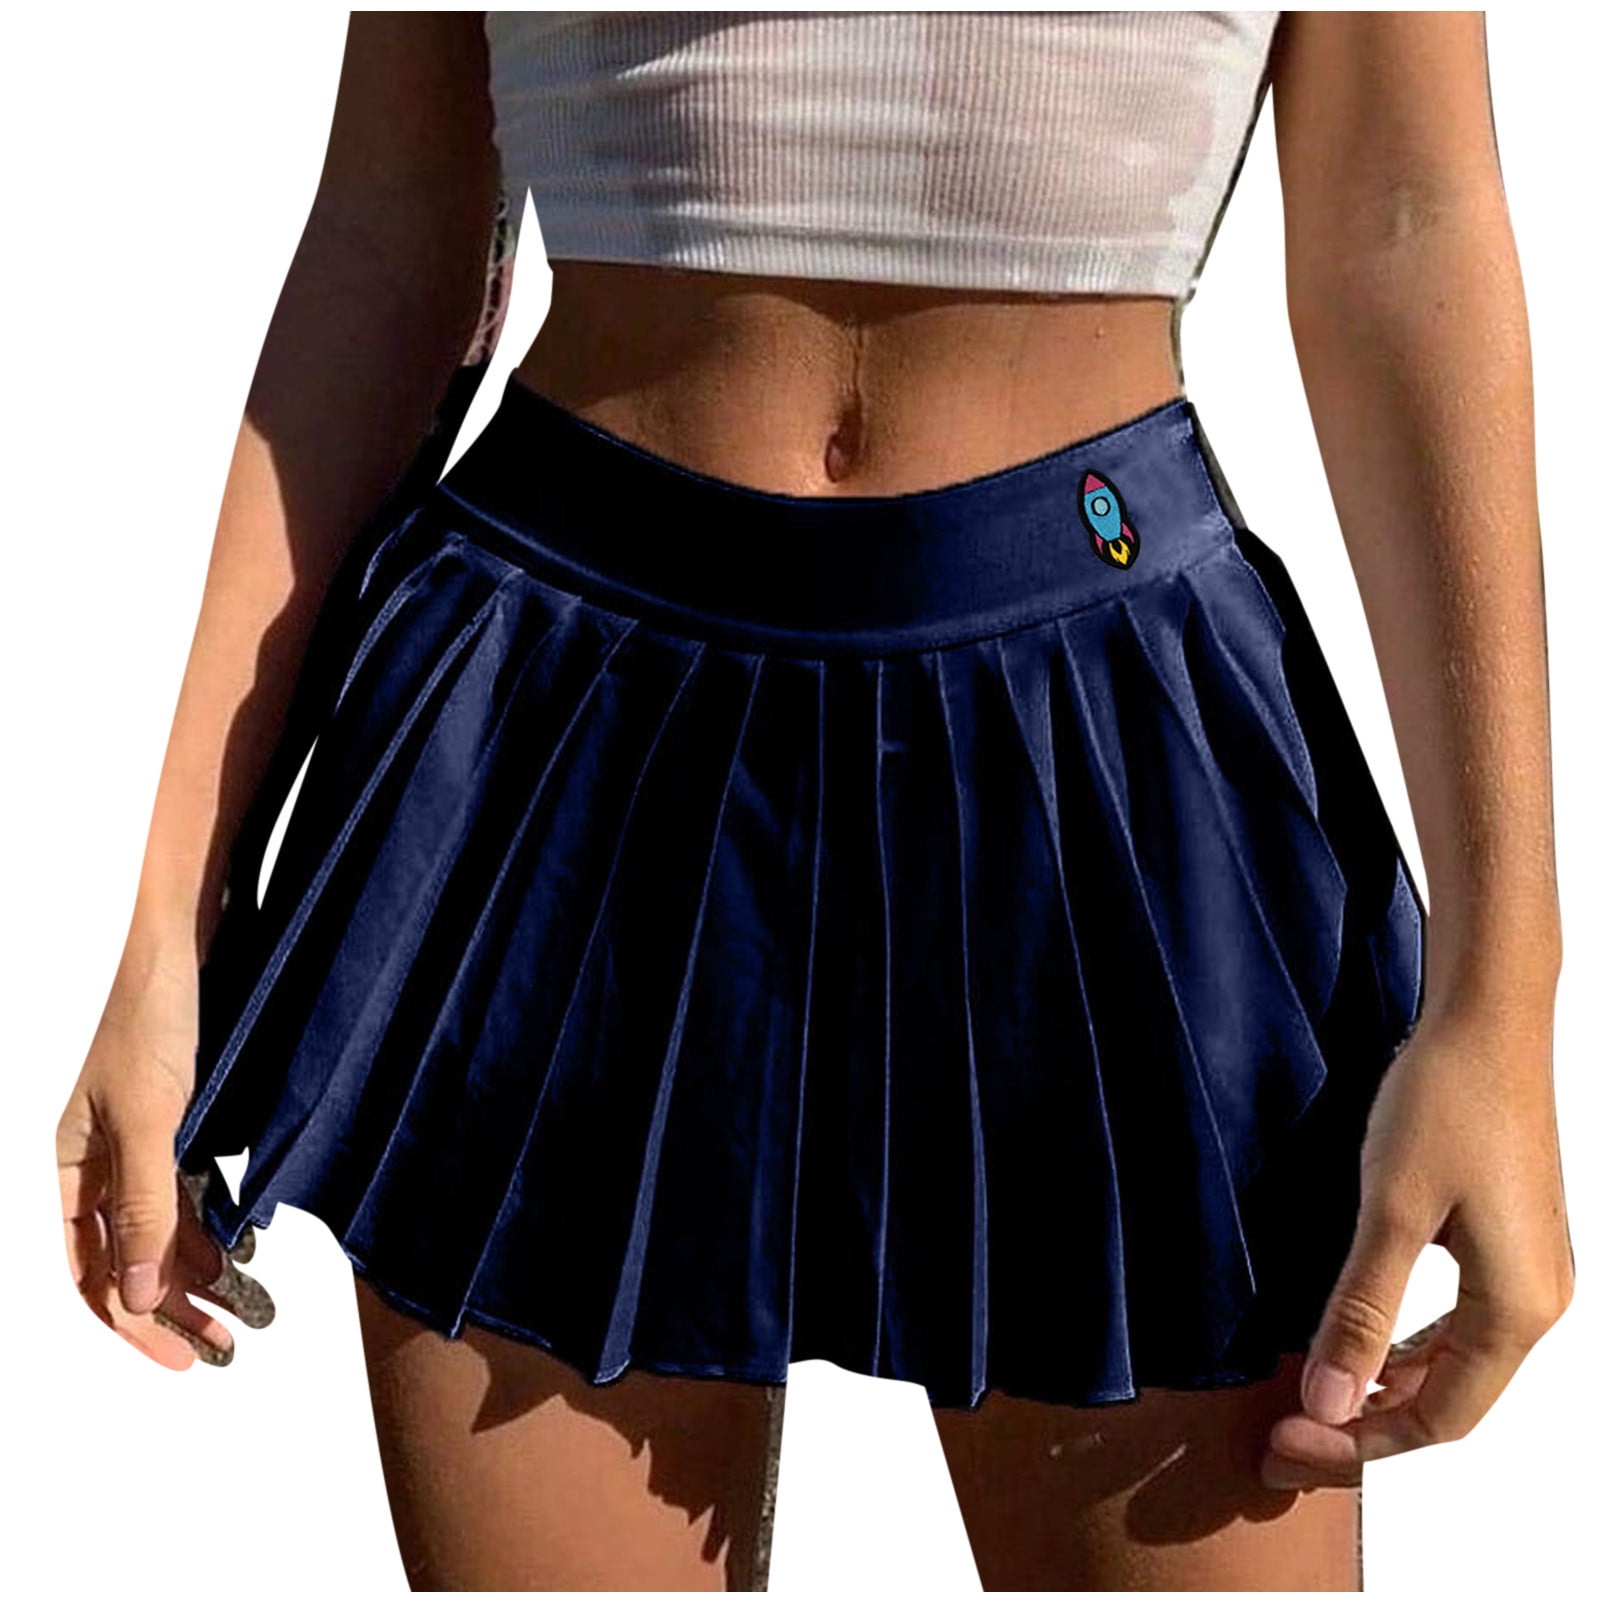 Mrat Skirt High Waist Pleated Midi Skirt Ladies Cute Pattern Skirt Thin Short Side Zipper Pleated Skirt Tennis Skirts For Female